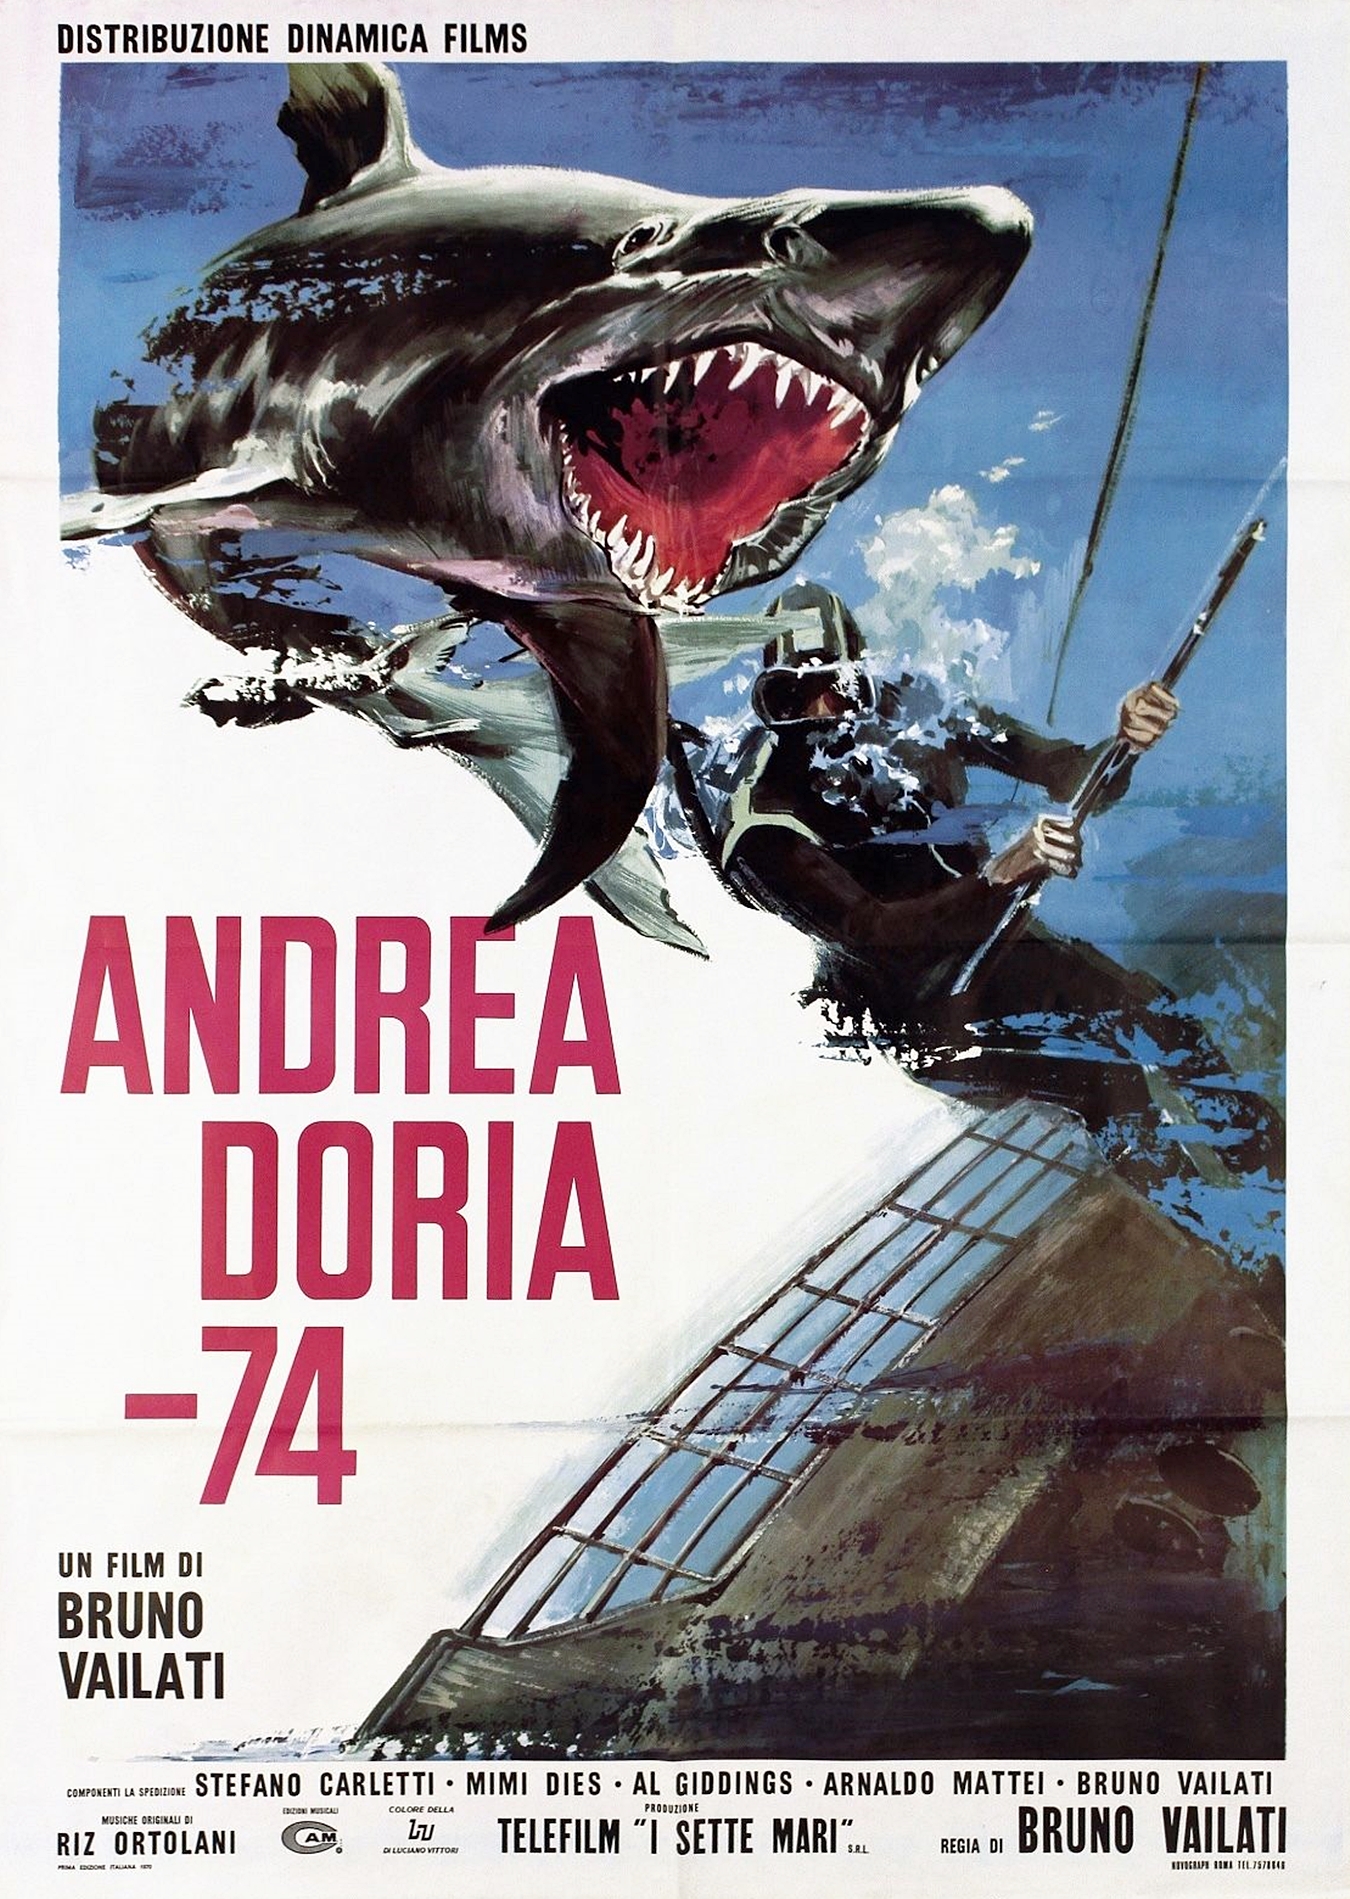 Andrea Doria -74 (1970) Screenshot 1 